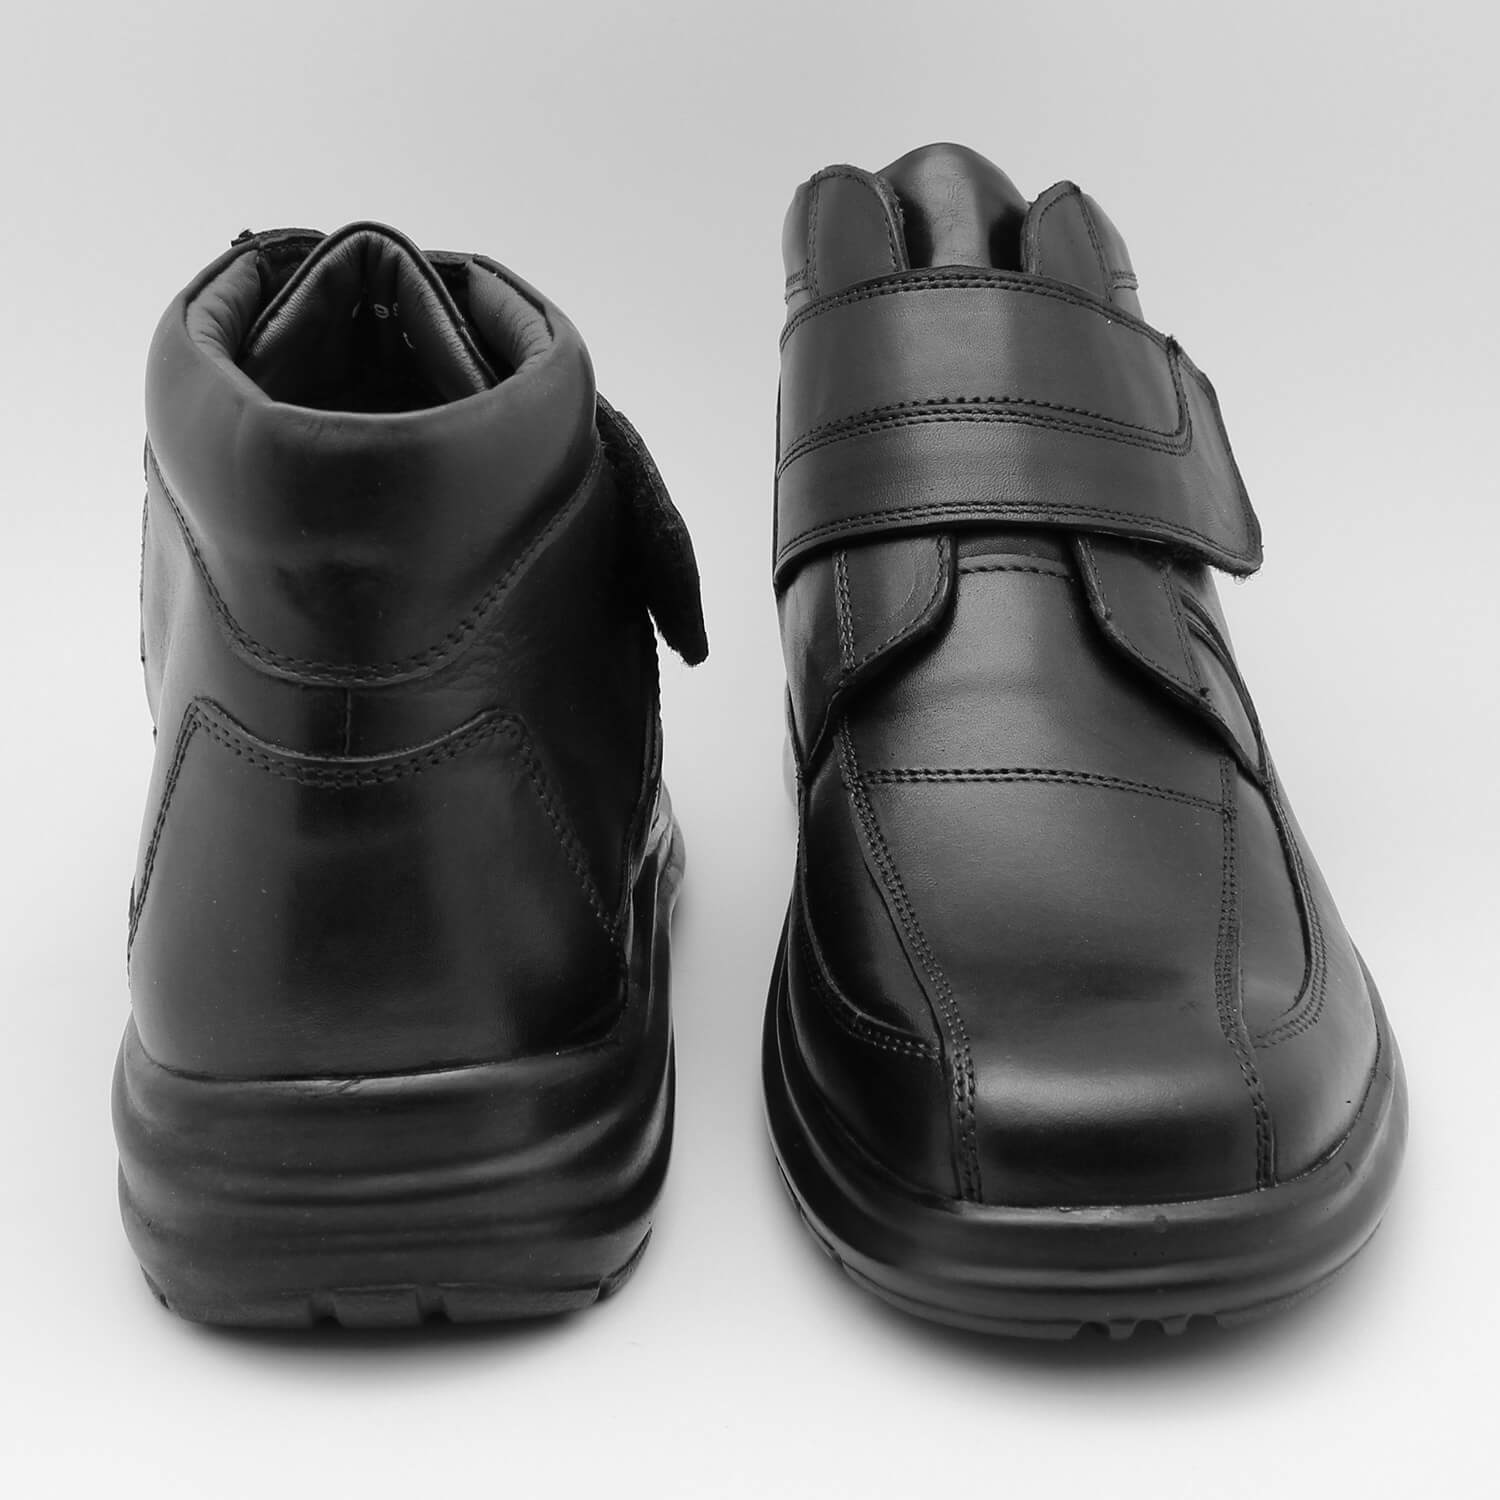 Обувь на липучках мужская. Ортопедические мужские ботинки Nimco. Белорусская обувь модель 3243 ботинки на липучках. Air Fly Comfort ортопедические ботинки. Bally ботинки мужские на липучке.